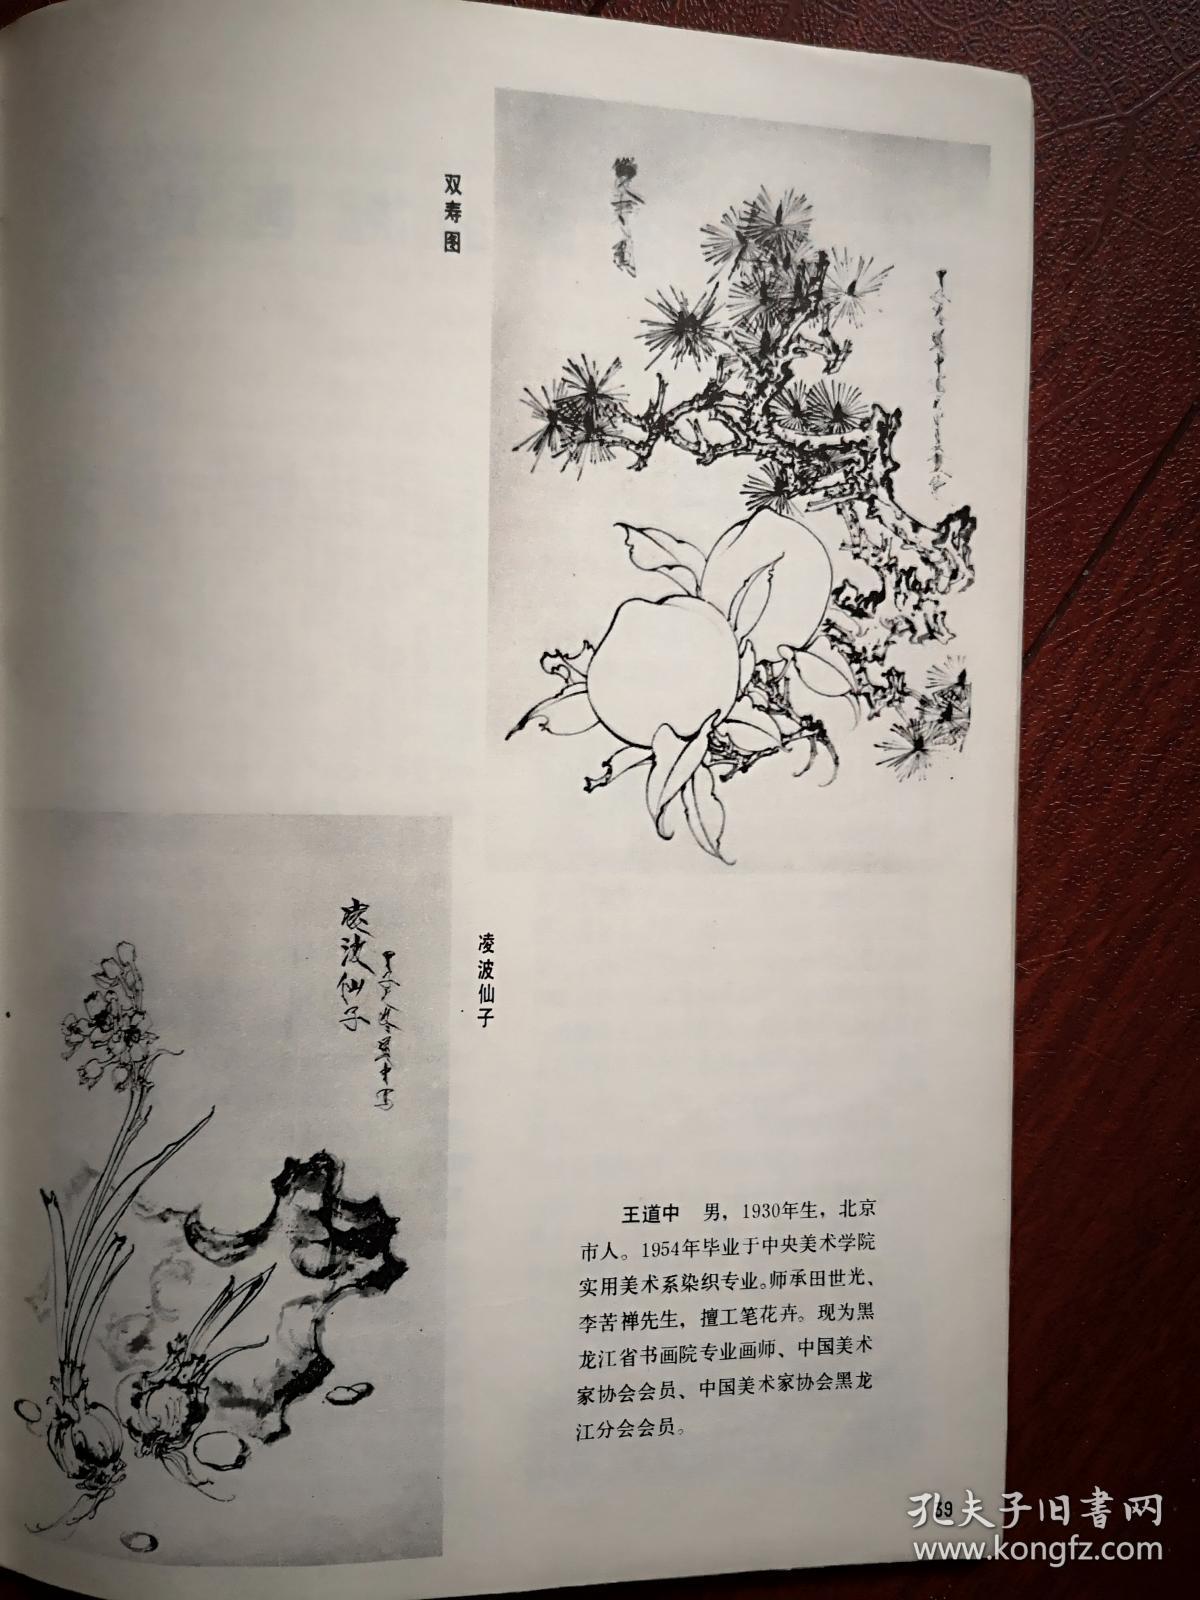 美术插页王道中国画《双寿图》《凌波仙子》，任广武文章《试论徐渭的题画诗》（单张）